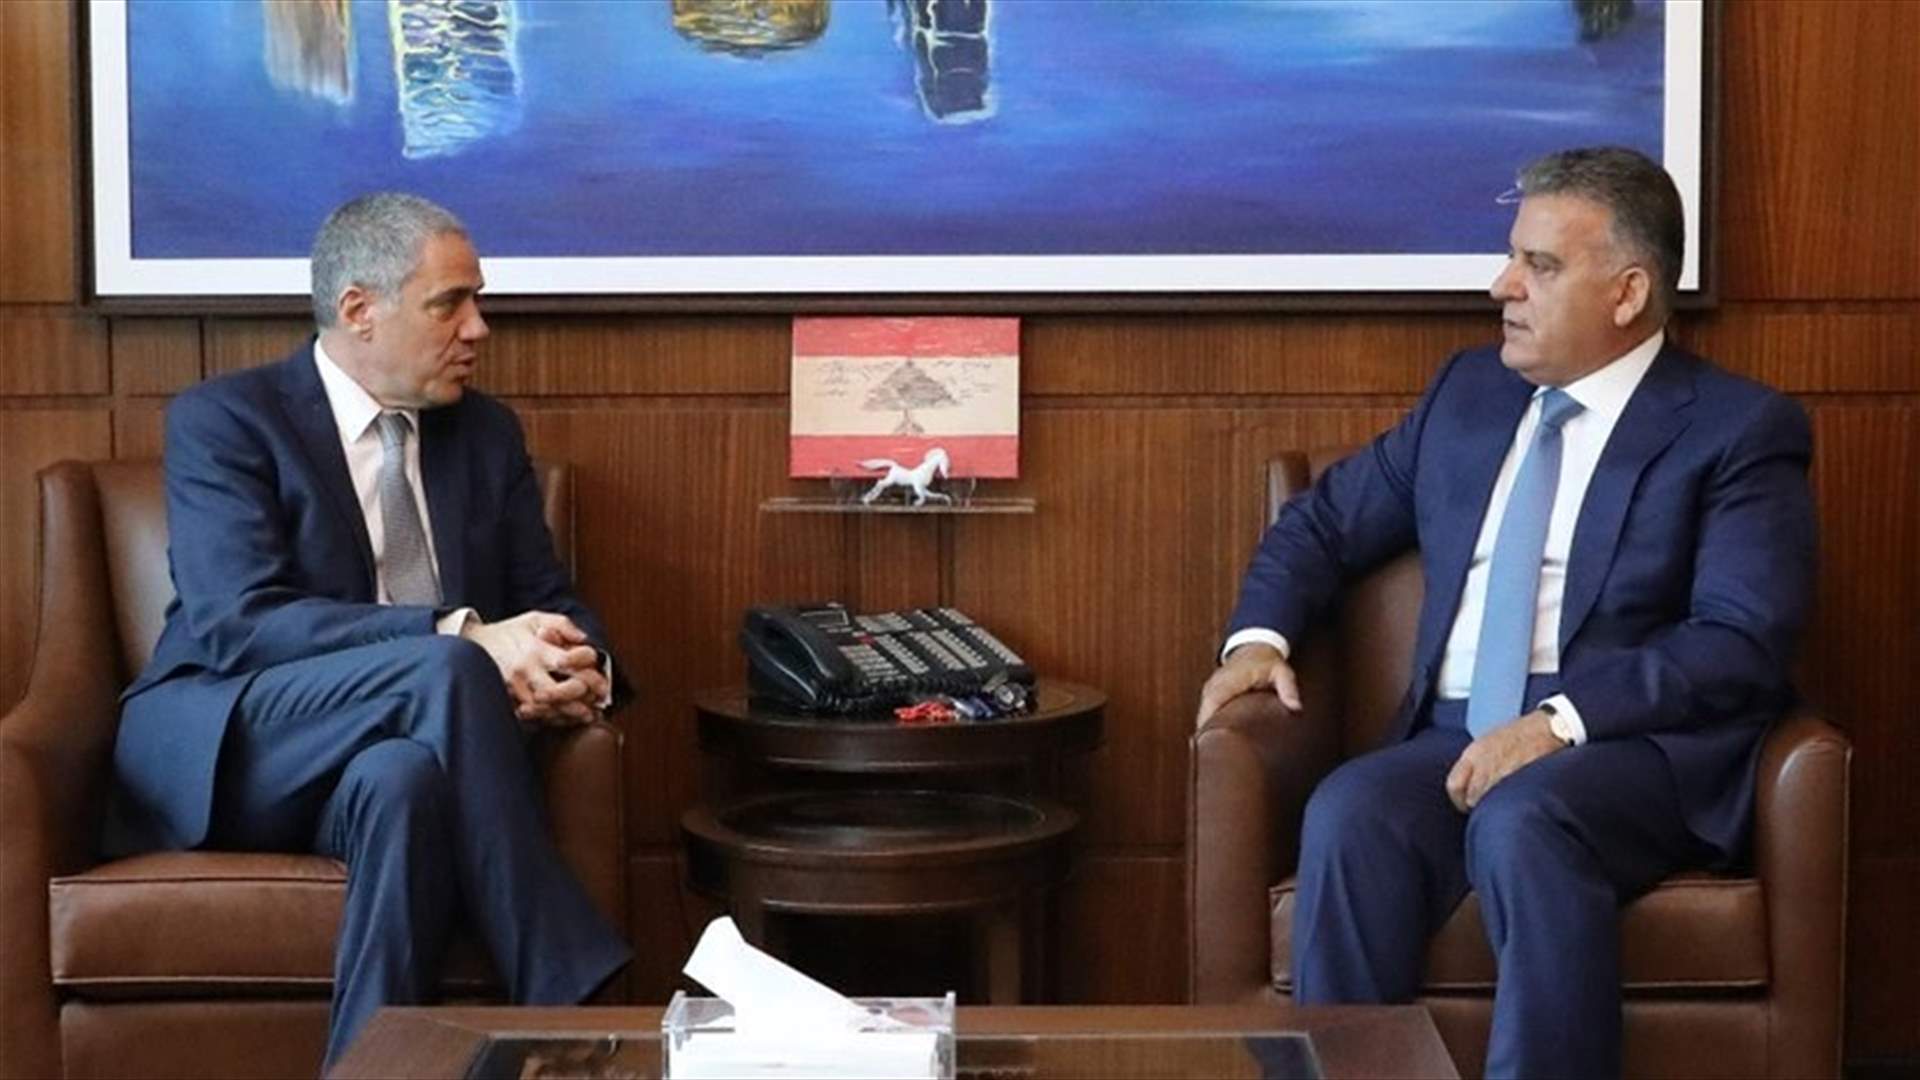 Ibrahim meets with new EU ambassador to Lebanon